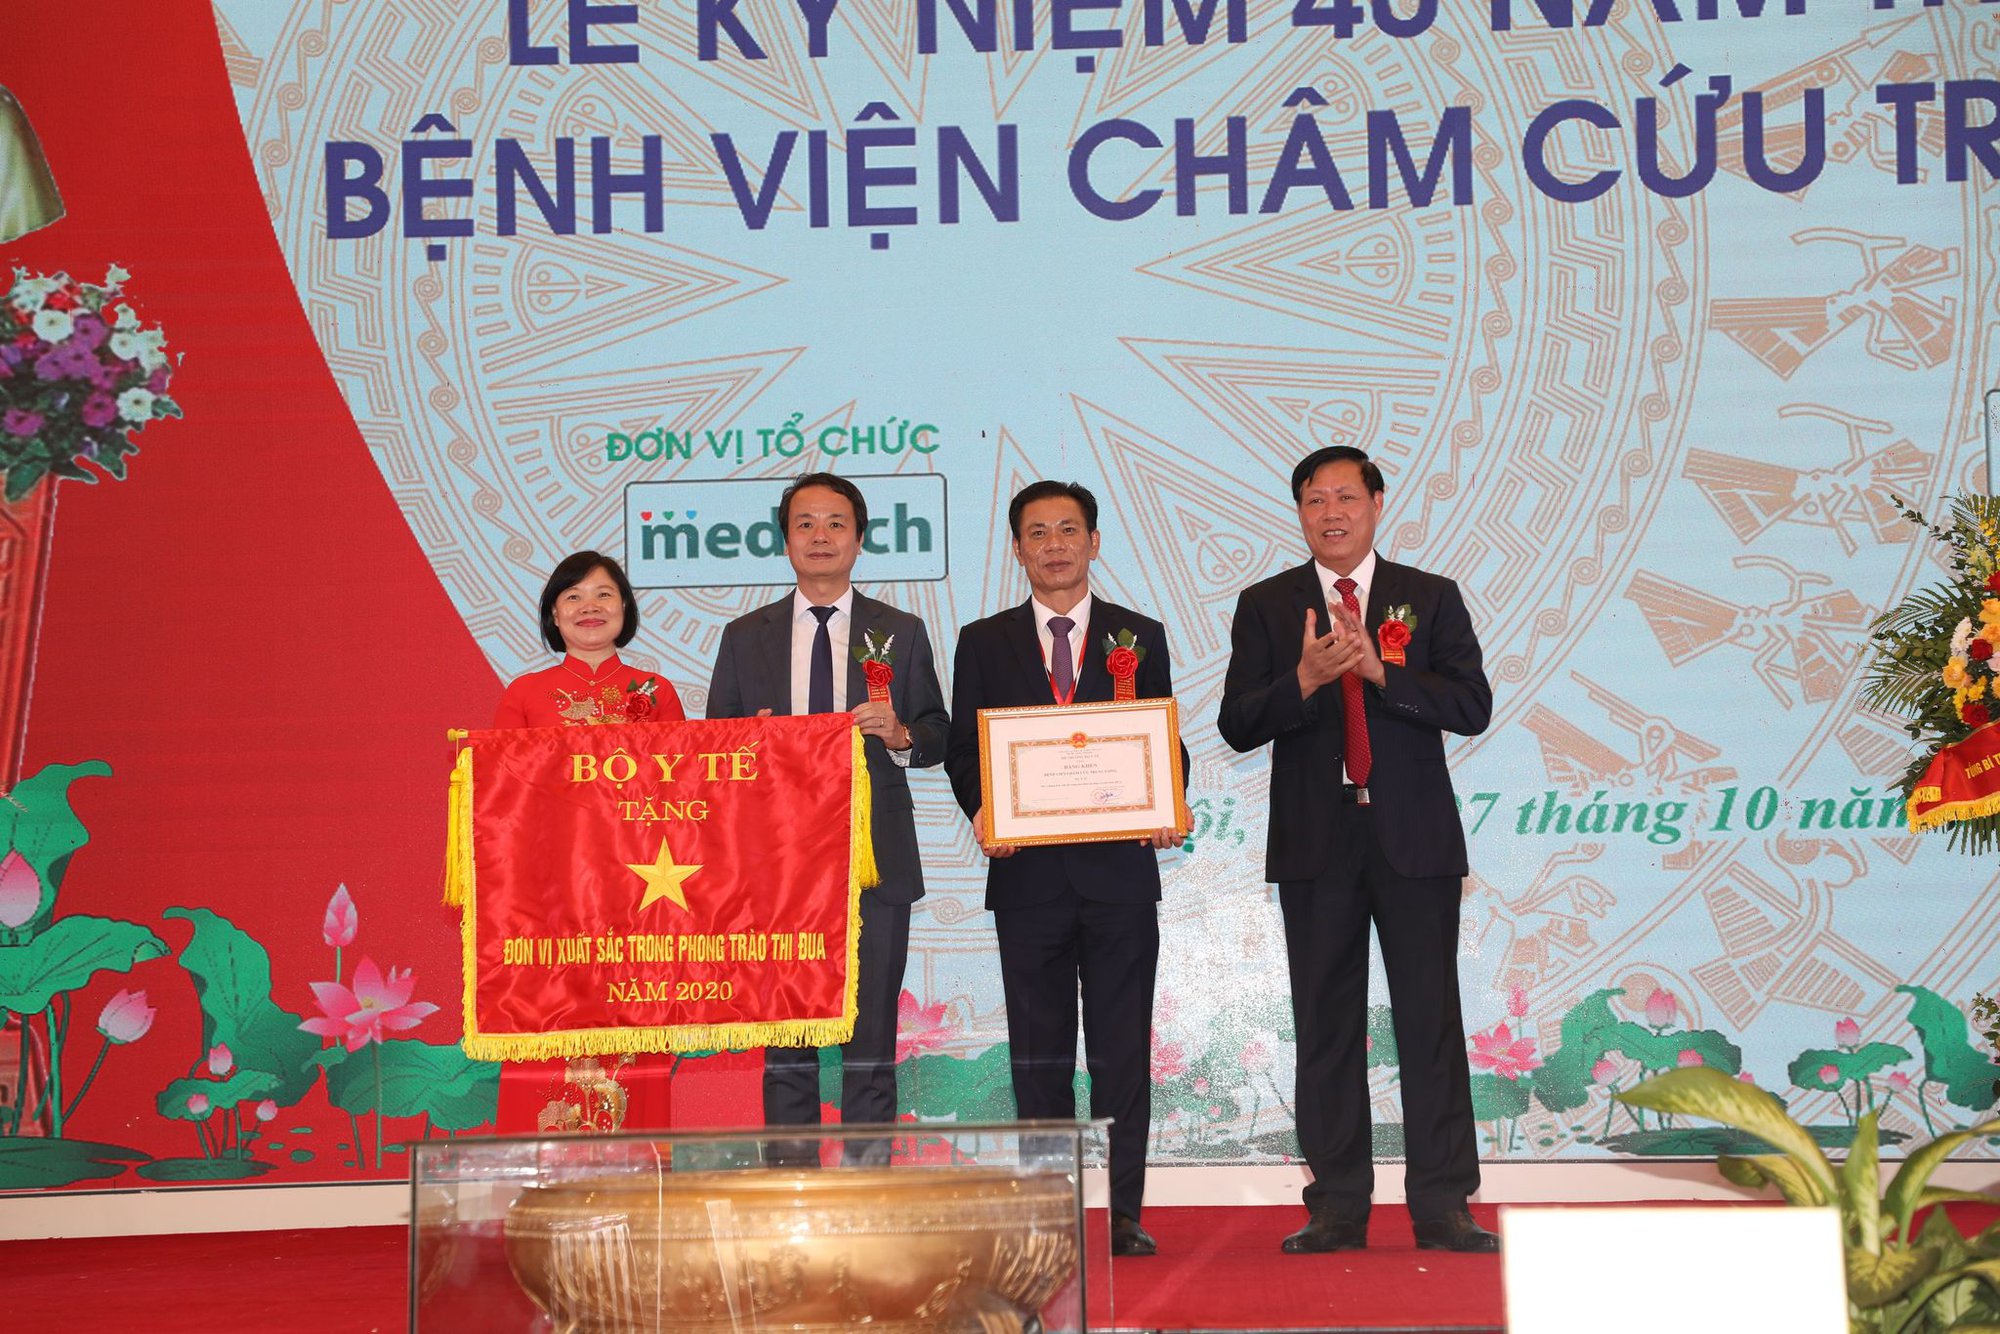 Hành trình 40 năm đưa cây kim châm cứu Việt Nam ra thế giới